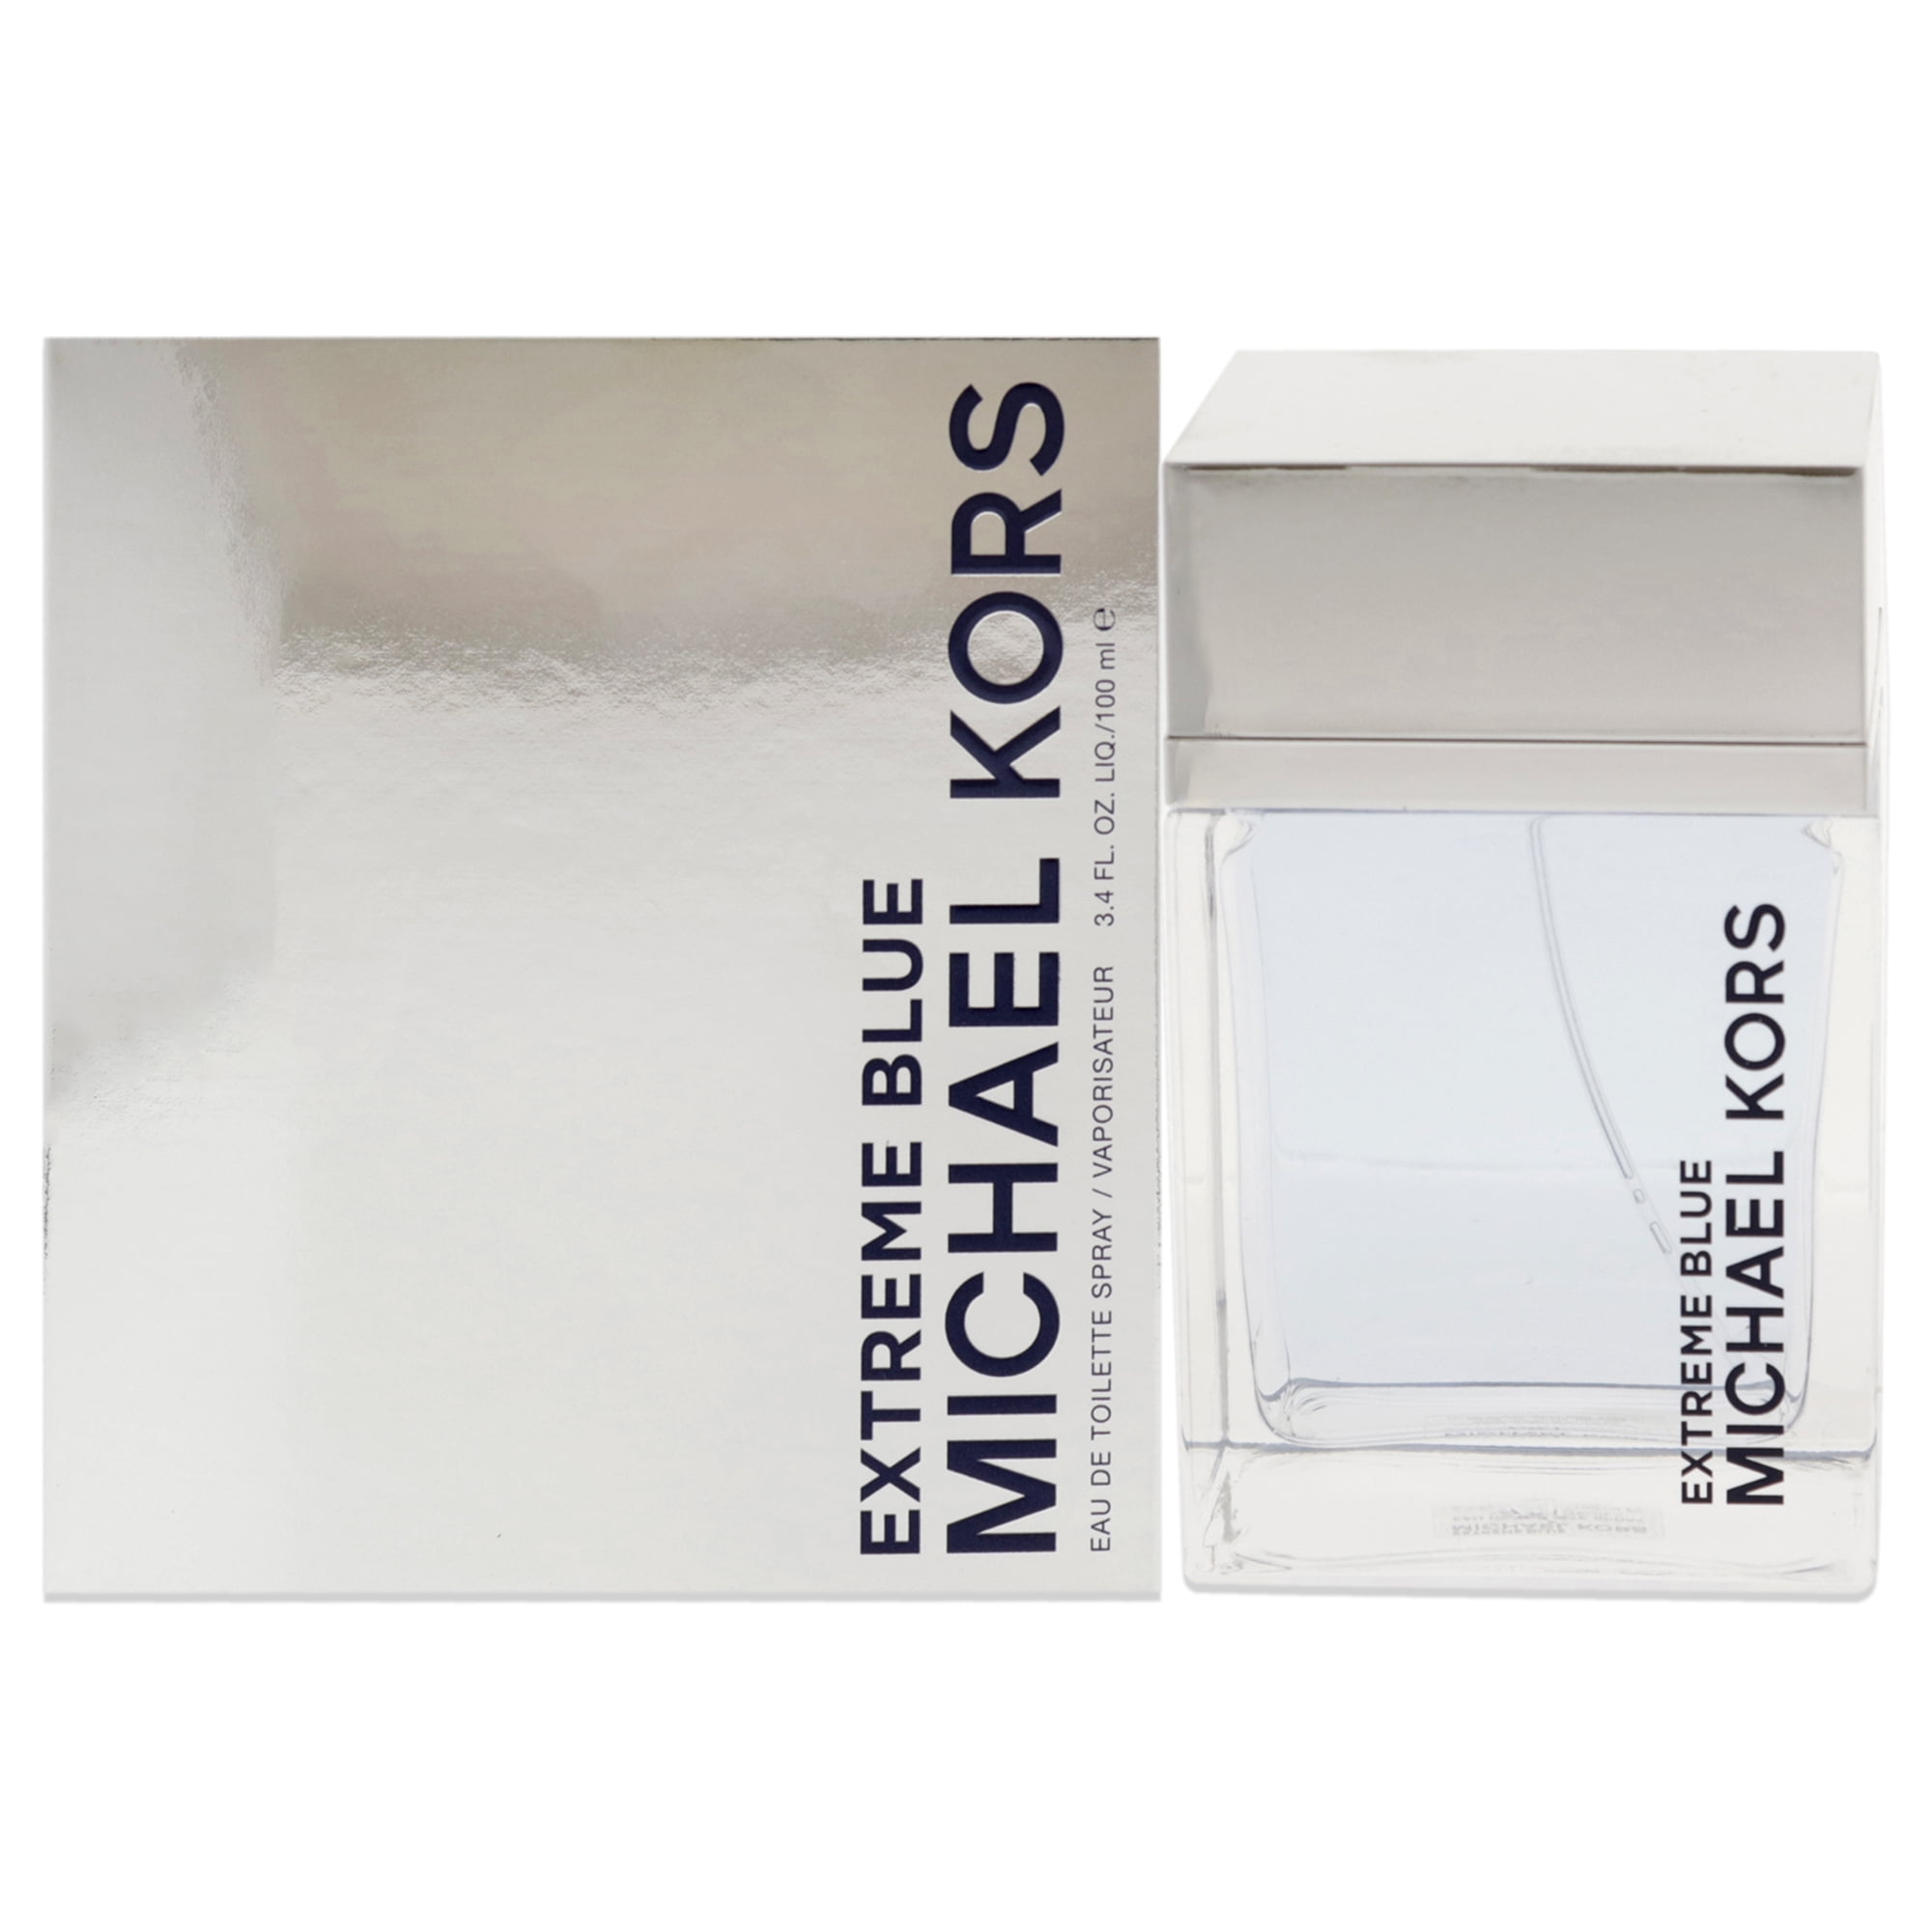 Michael Kors Extreme Blue Eau De Toilette Spray, Cologne for Men, 3.4 oz